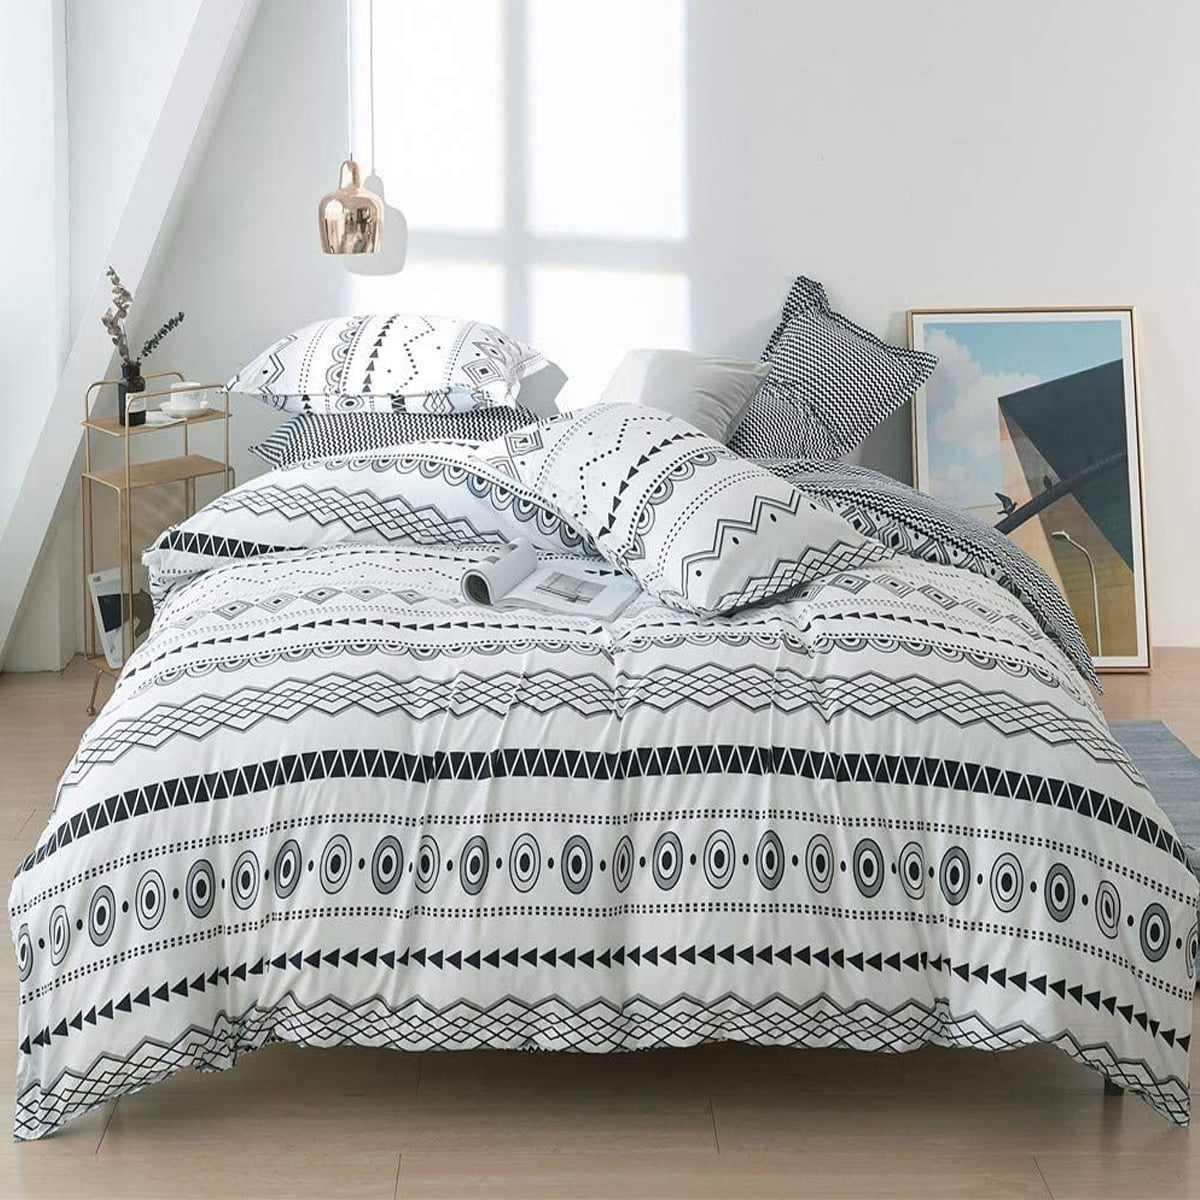 Bohemian Comforter Sets Queen Lightweight Soft 3-Piece Microfiber Bedding Boho 2 